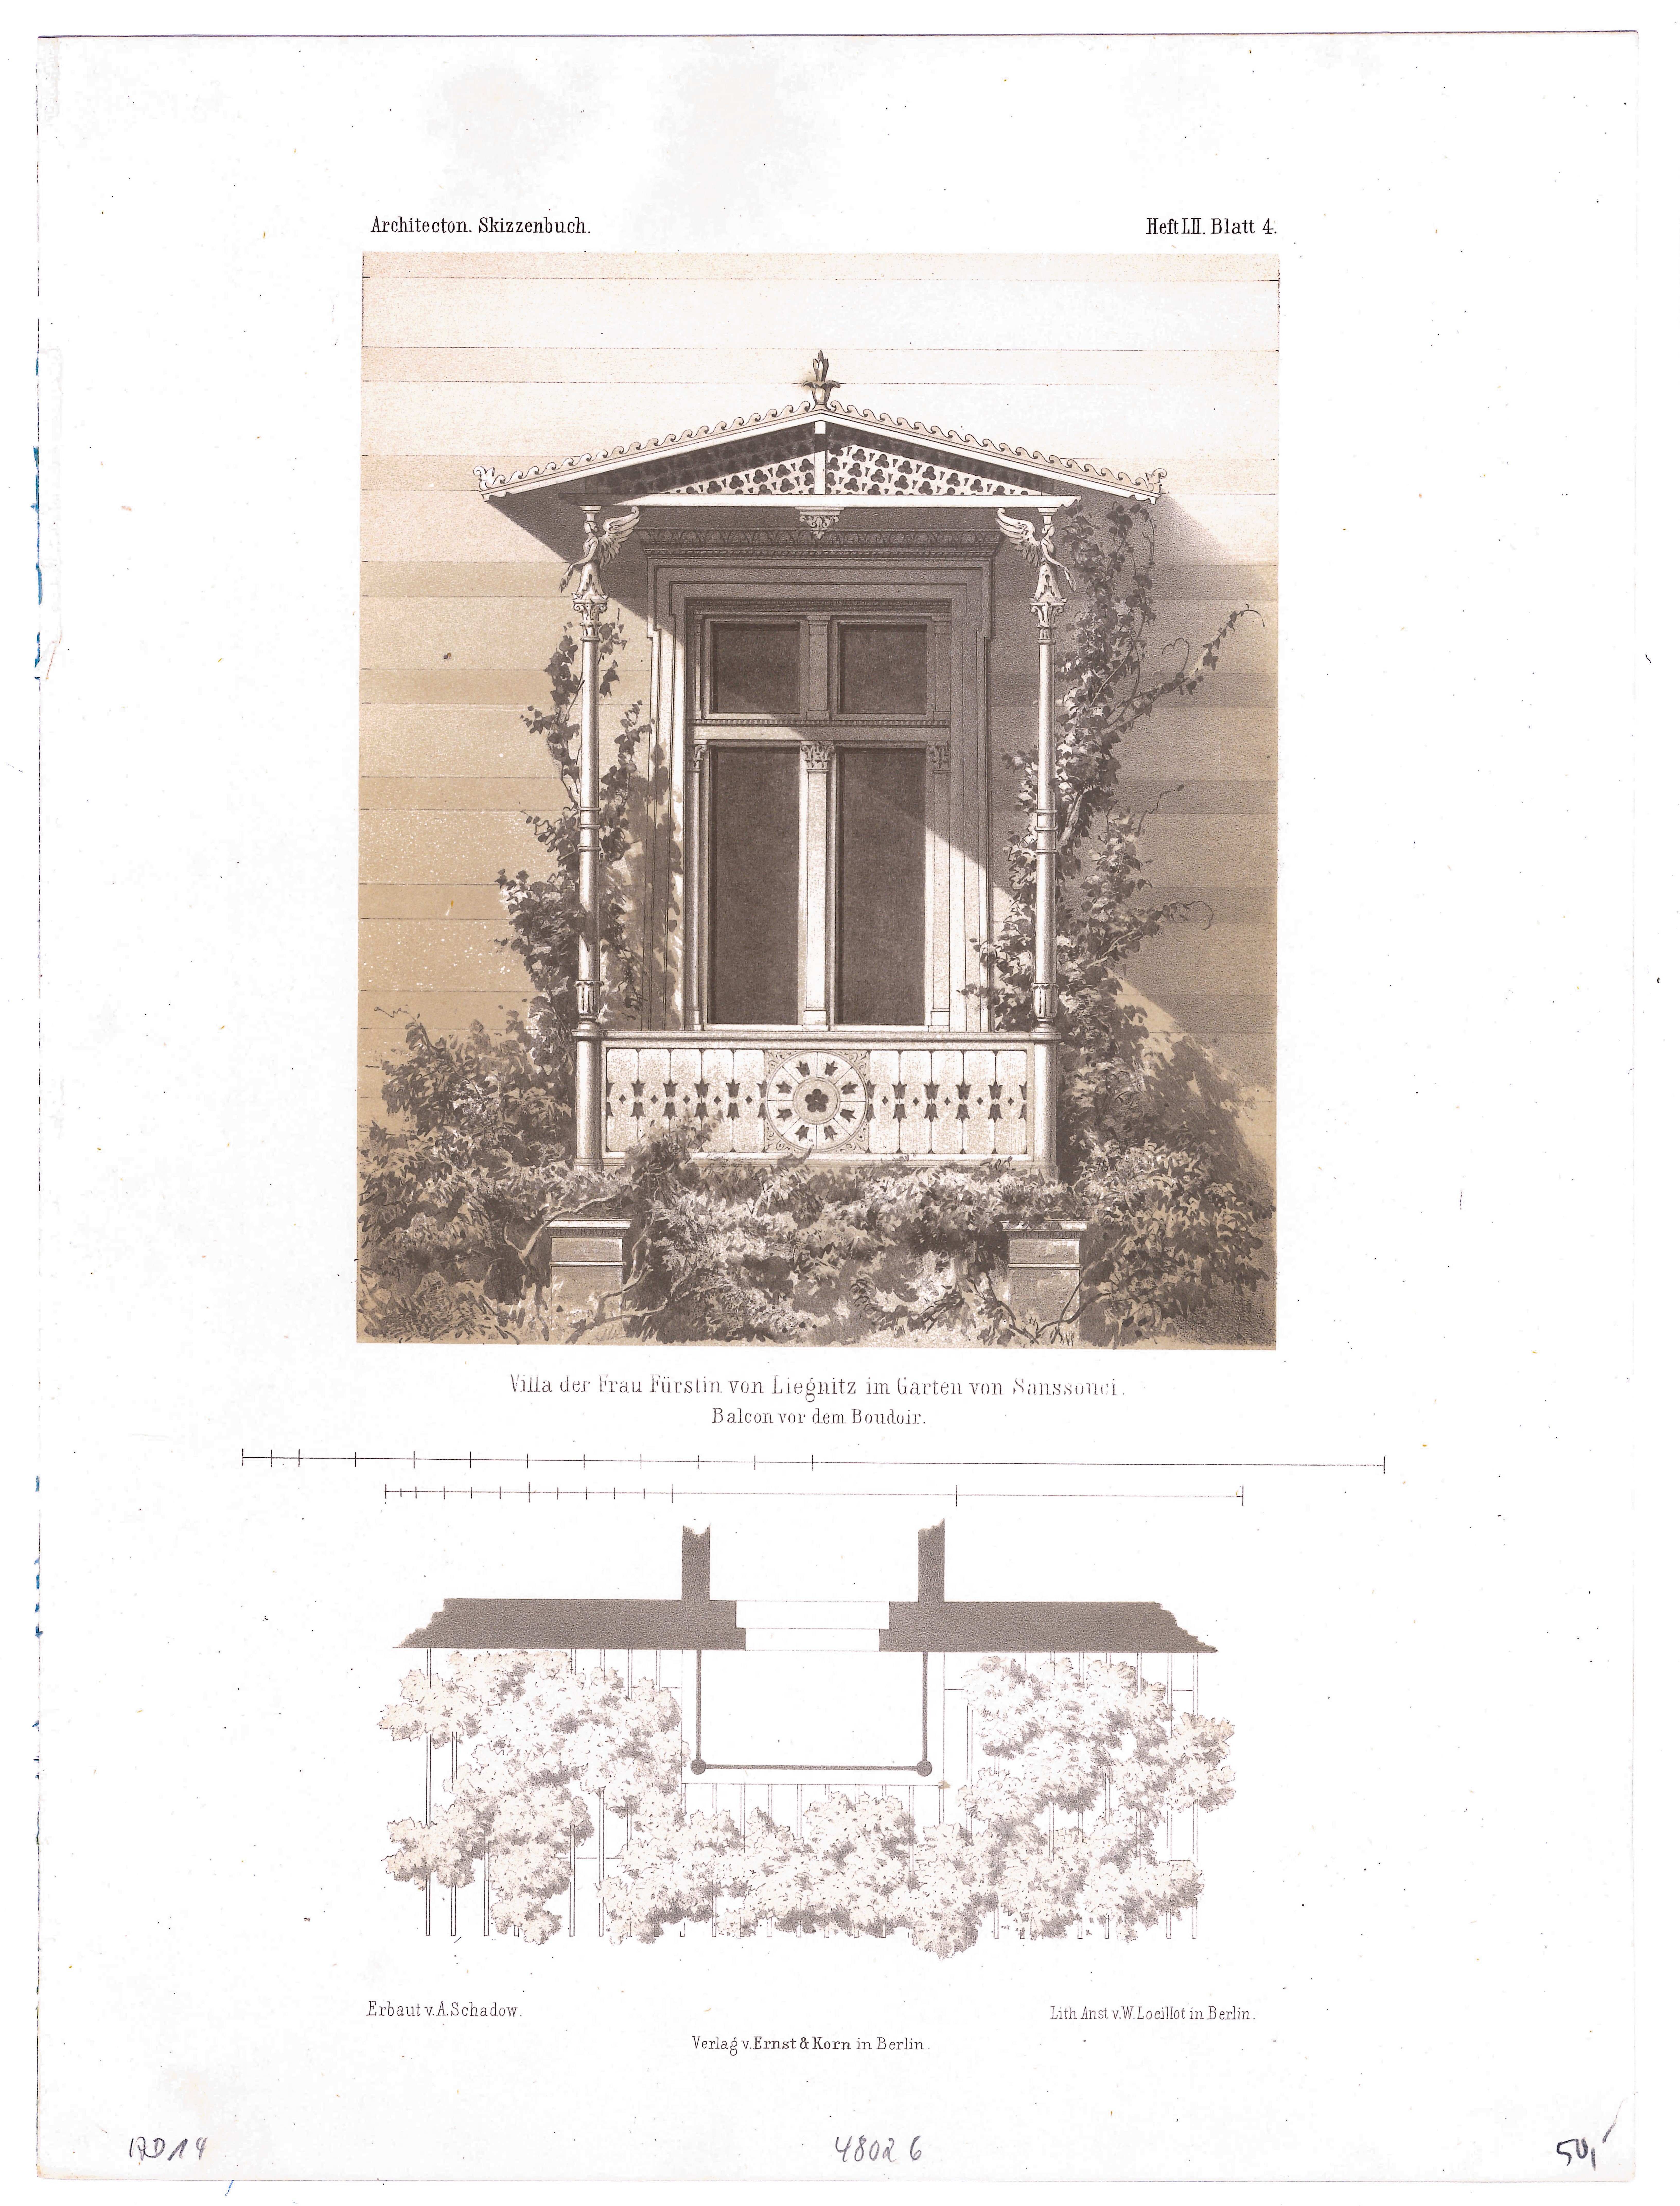 Villa Liegnitz in Sanssouci (Architectonisches Skizzenbuch - 1863, Heft LII, Bl. 4) (Stiftung Fürst-Pückler-Museum Park und Schloss Branitz Public Domain Mark)